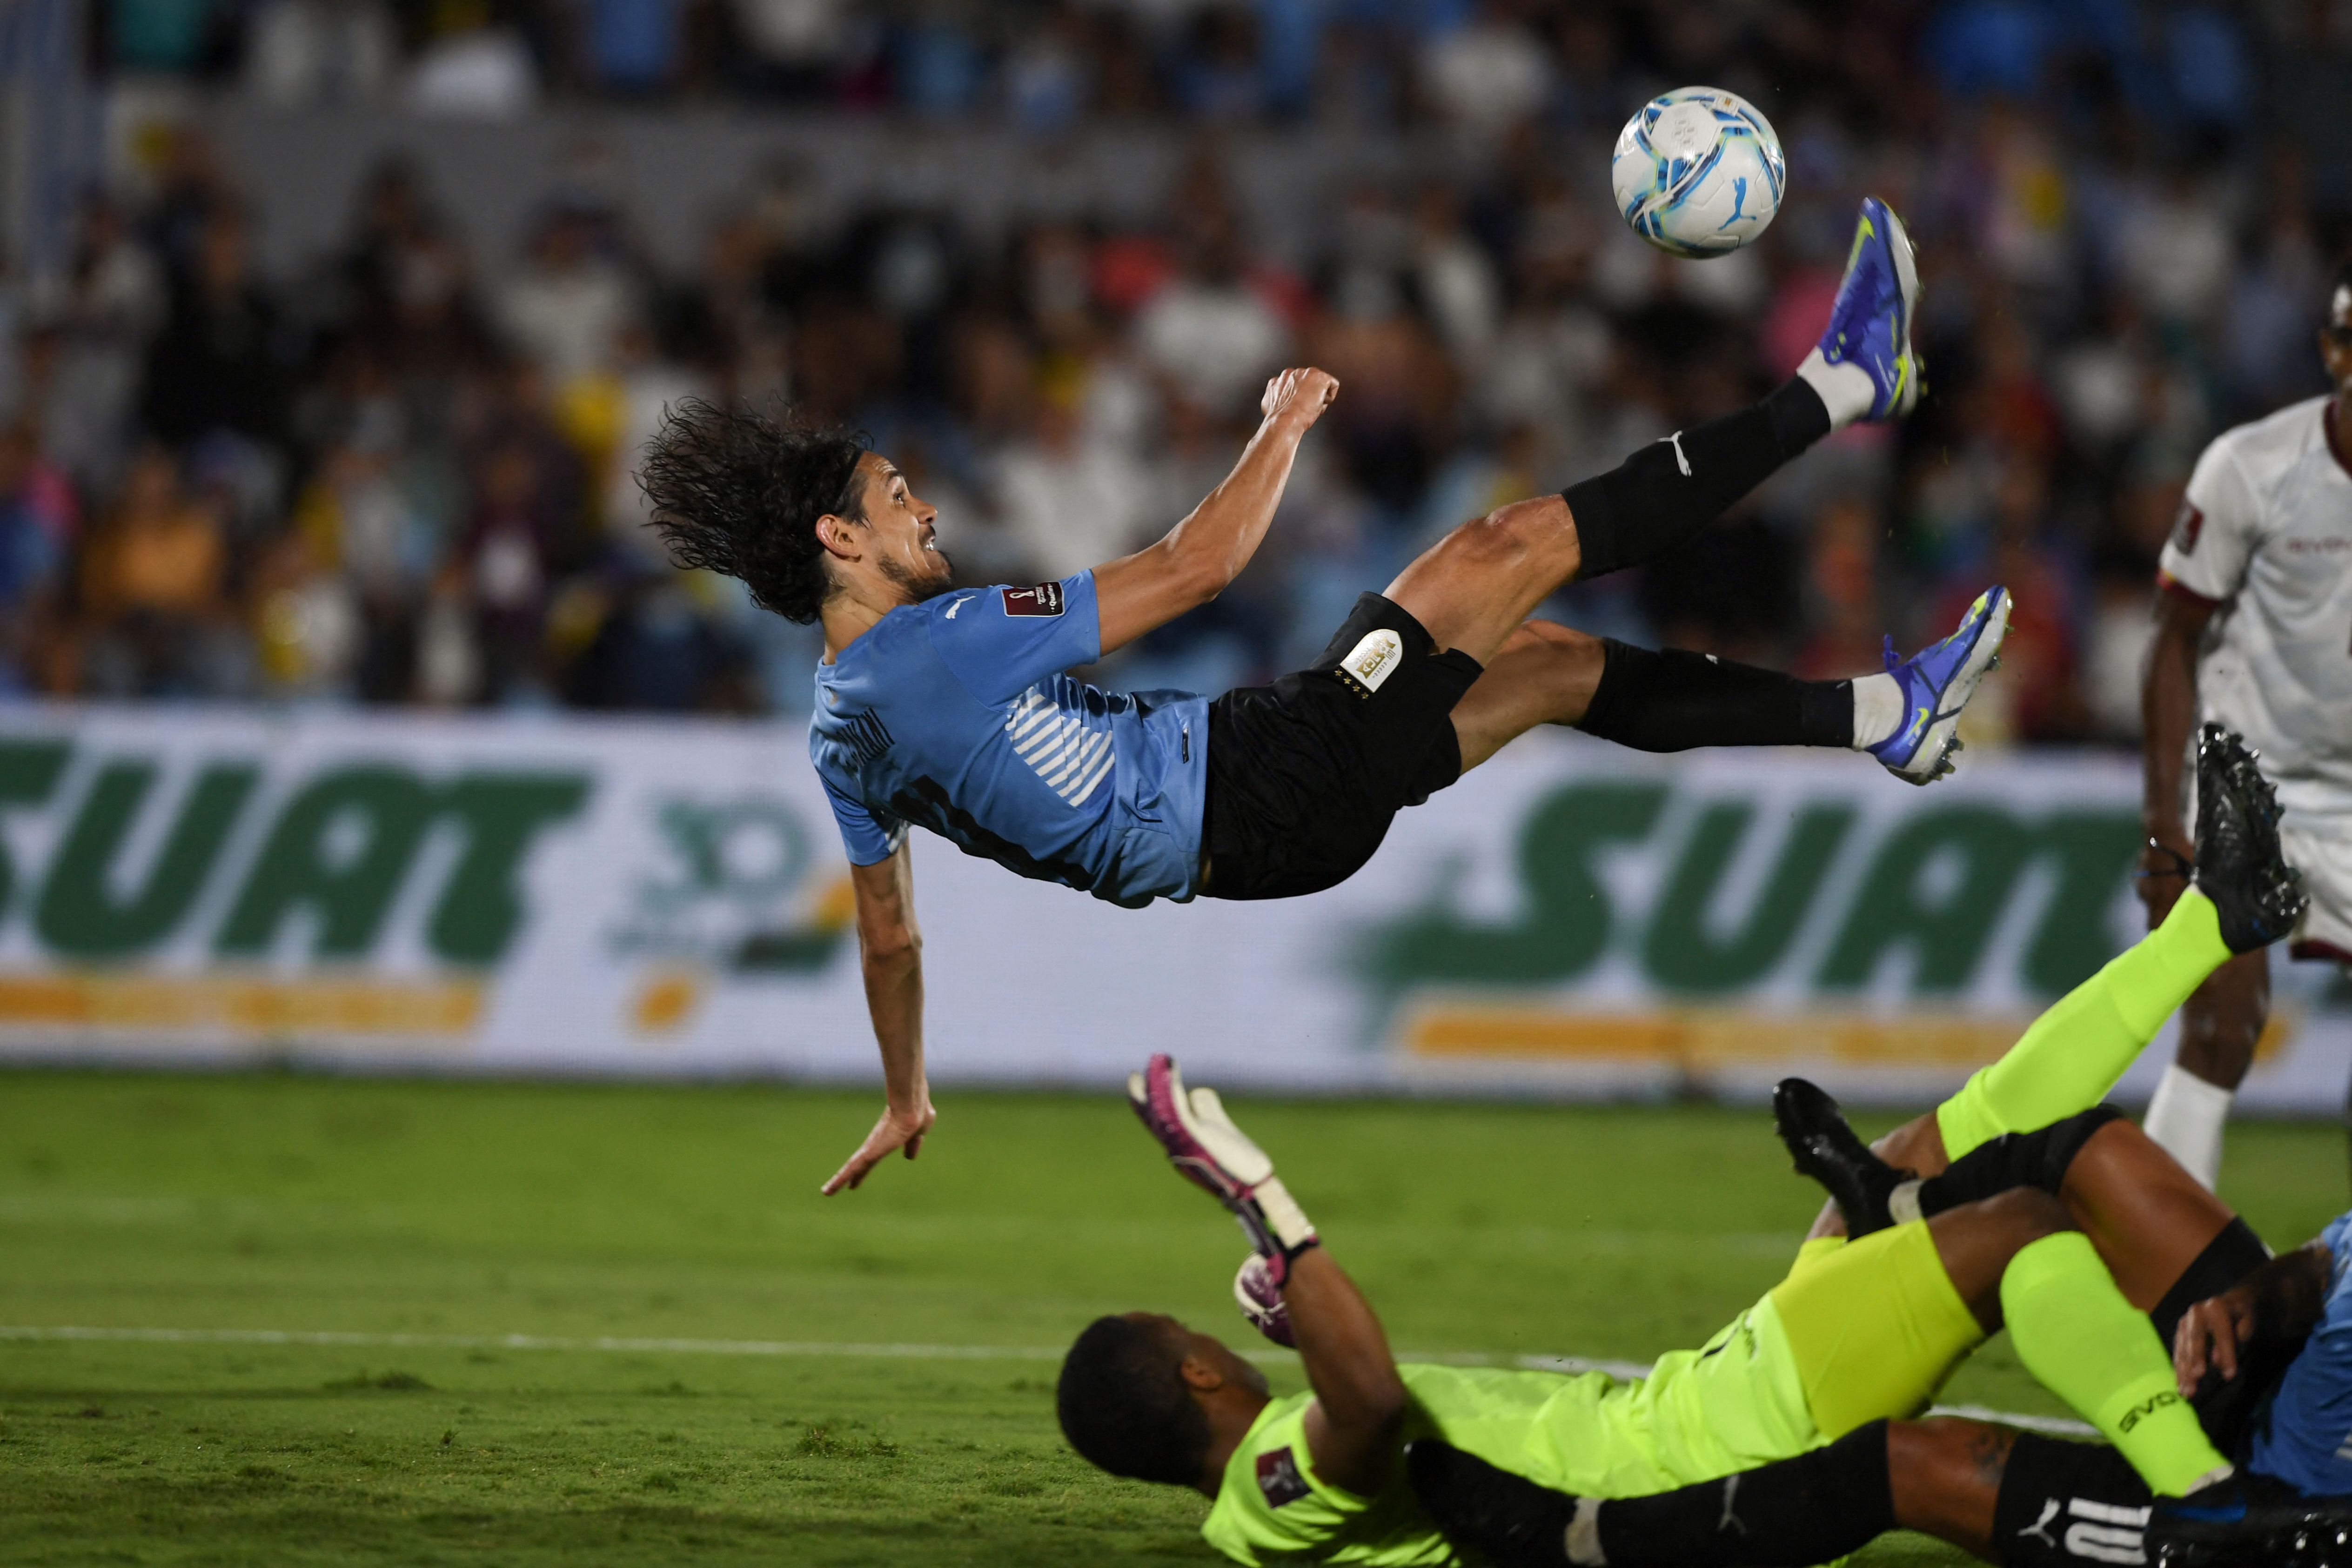 El delantero uruguayo Edinson Cavani marcó de "chilena" el tercer gol de La Celeste ante Venezuela. Al final ganaron 4-1 y se ubicaron en posiciones de clasificaicón directa al Mundial de Qatar 2022. Foto Prensa Libre: AFP.